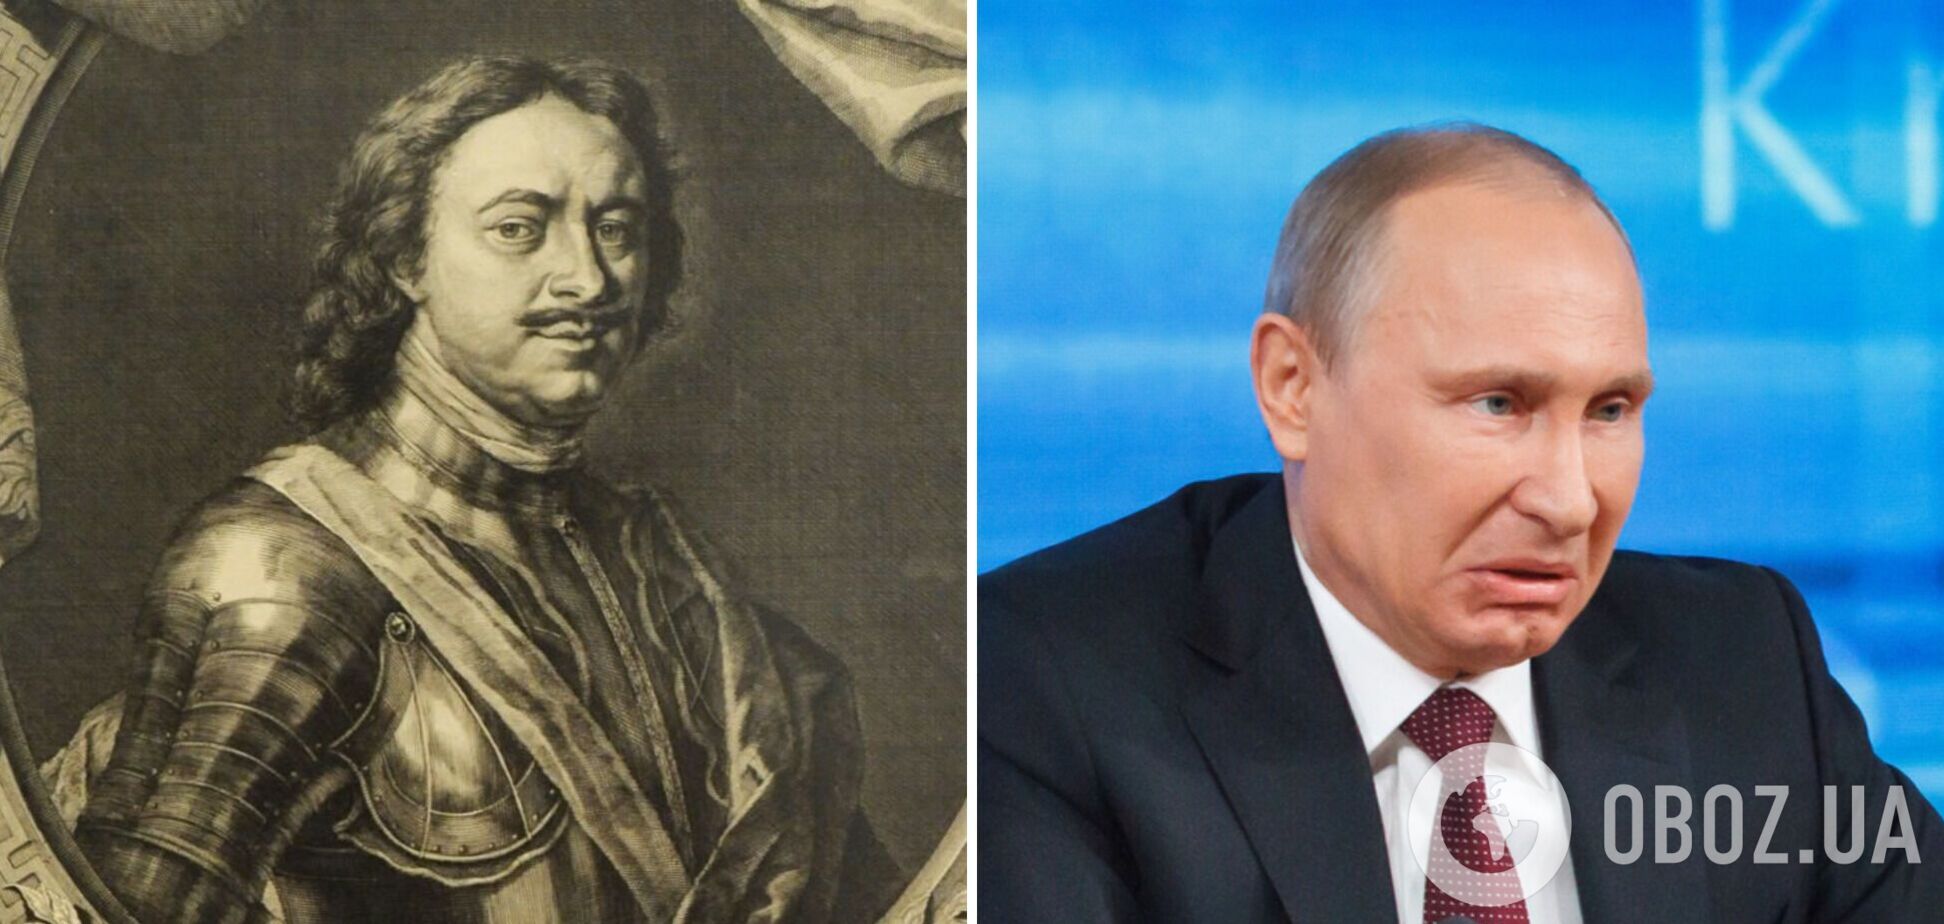 Правда про історичного вчителя Путіна 'чудовиська' Петра I від Льва Толстого